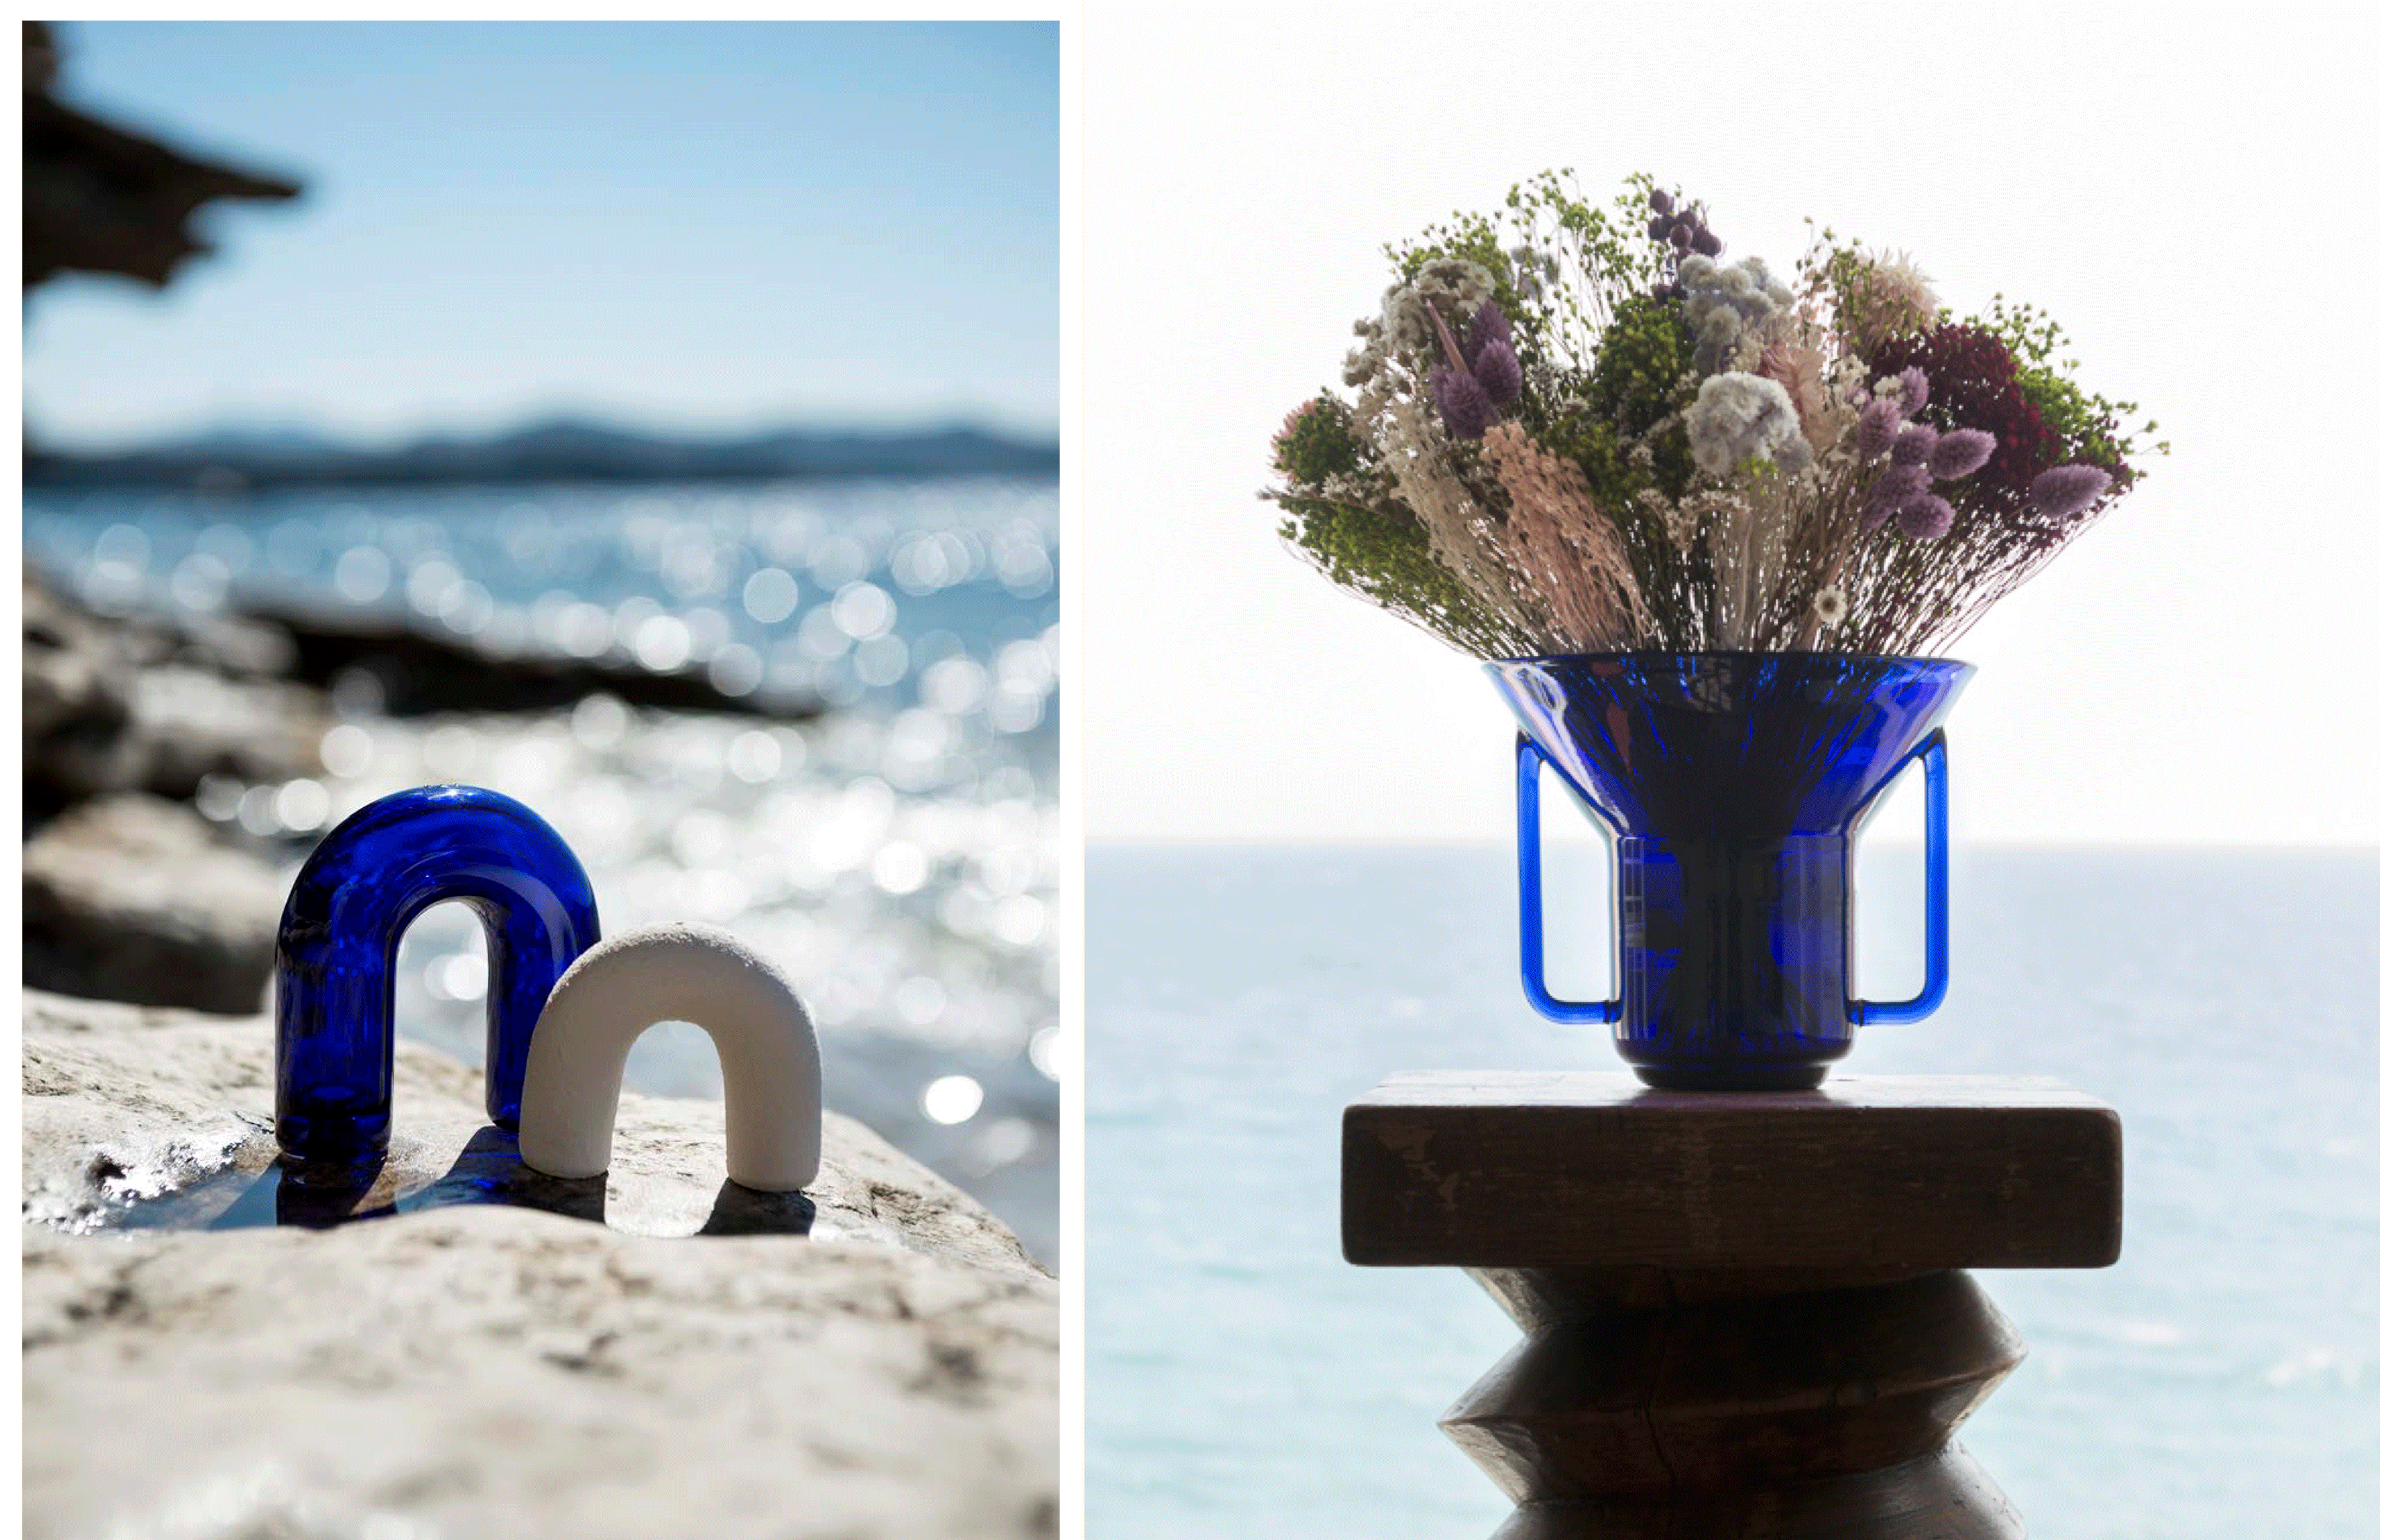 A droite, la salière et le poivrier Ormeaux s’inspirent des coquillages éponymes (2019). A droite, vase en verre bleu Bélu (2019). 
